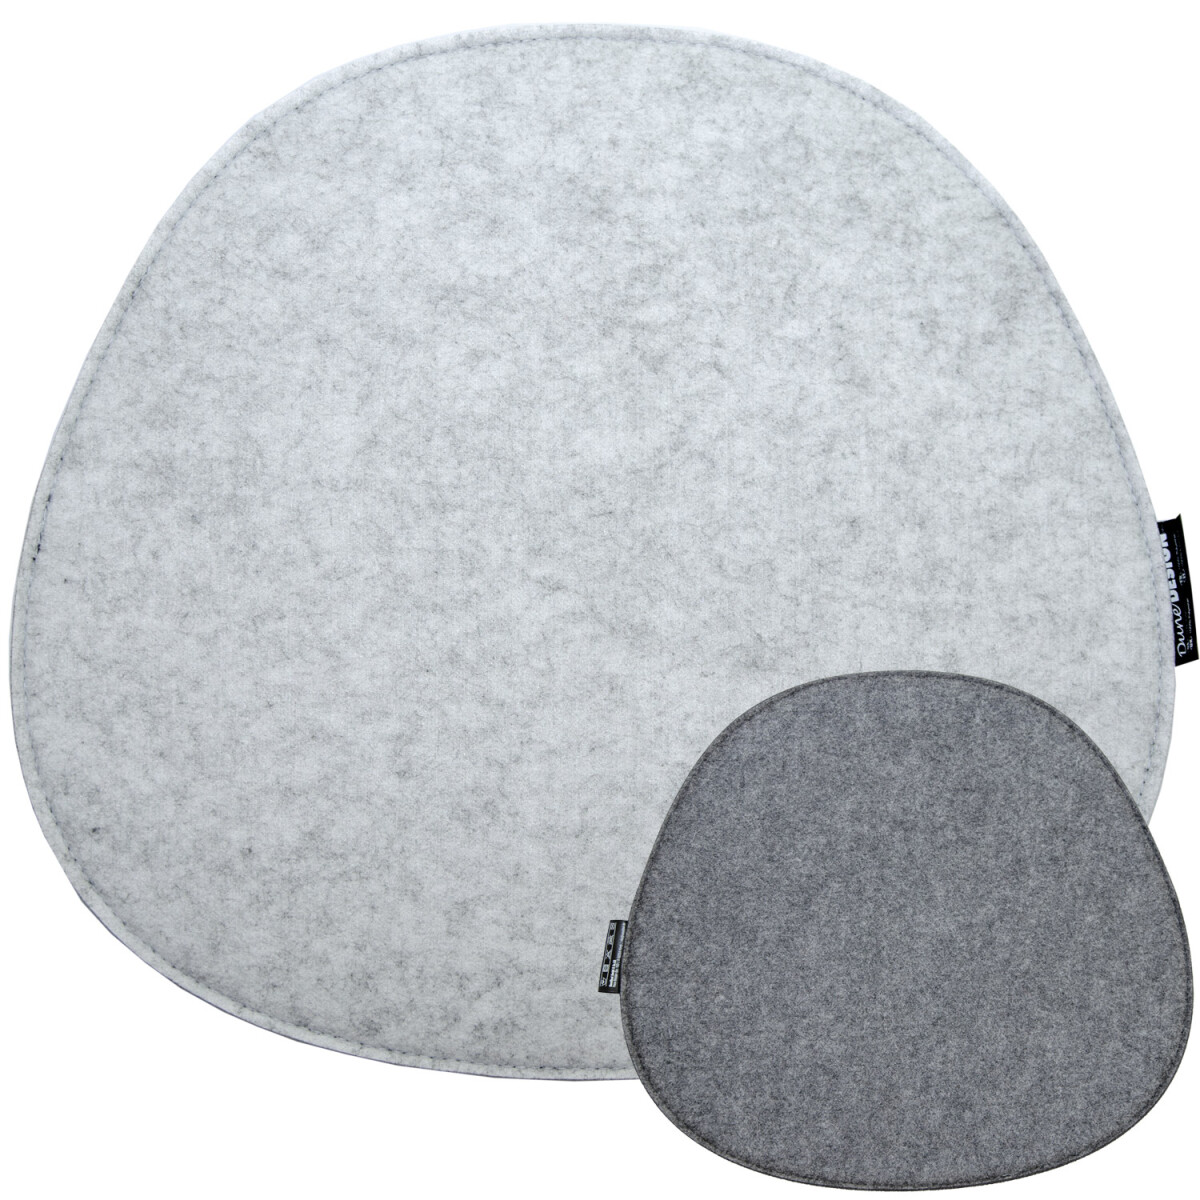 Ovales Filz Sitzkissen zum Wenden Grau 40x37x0,8cm